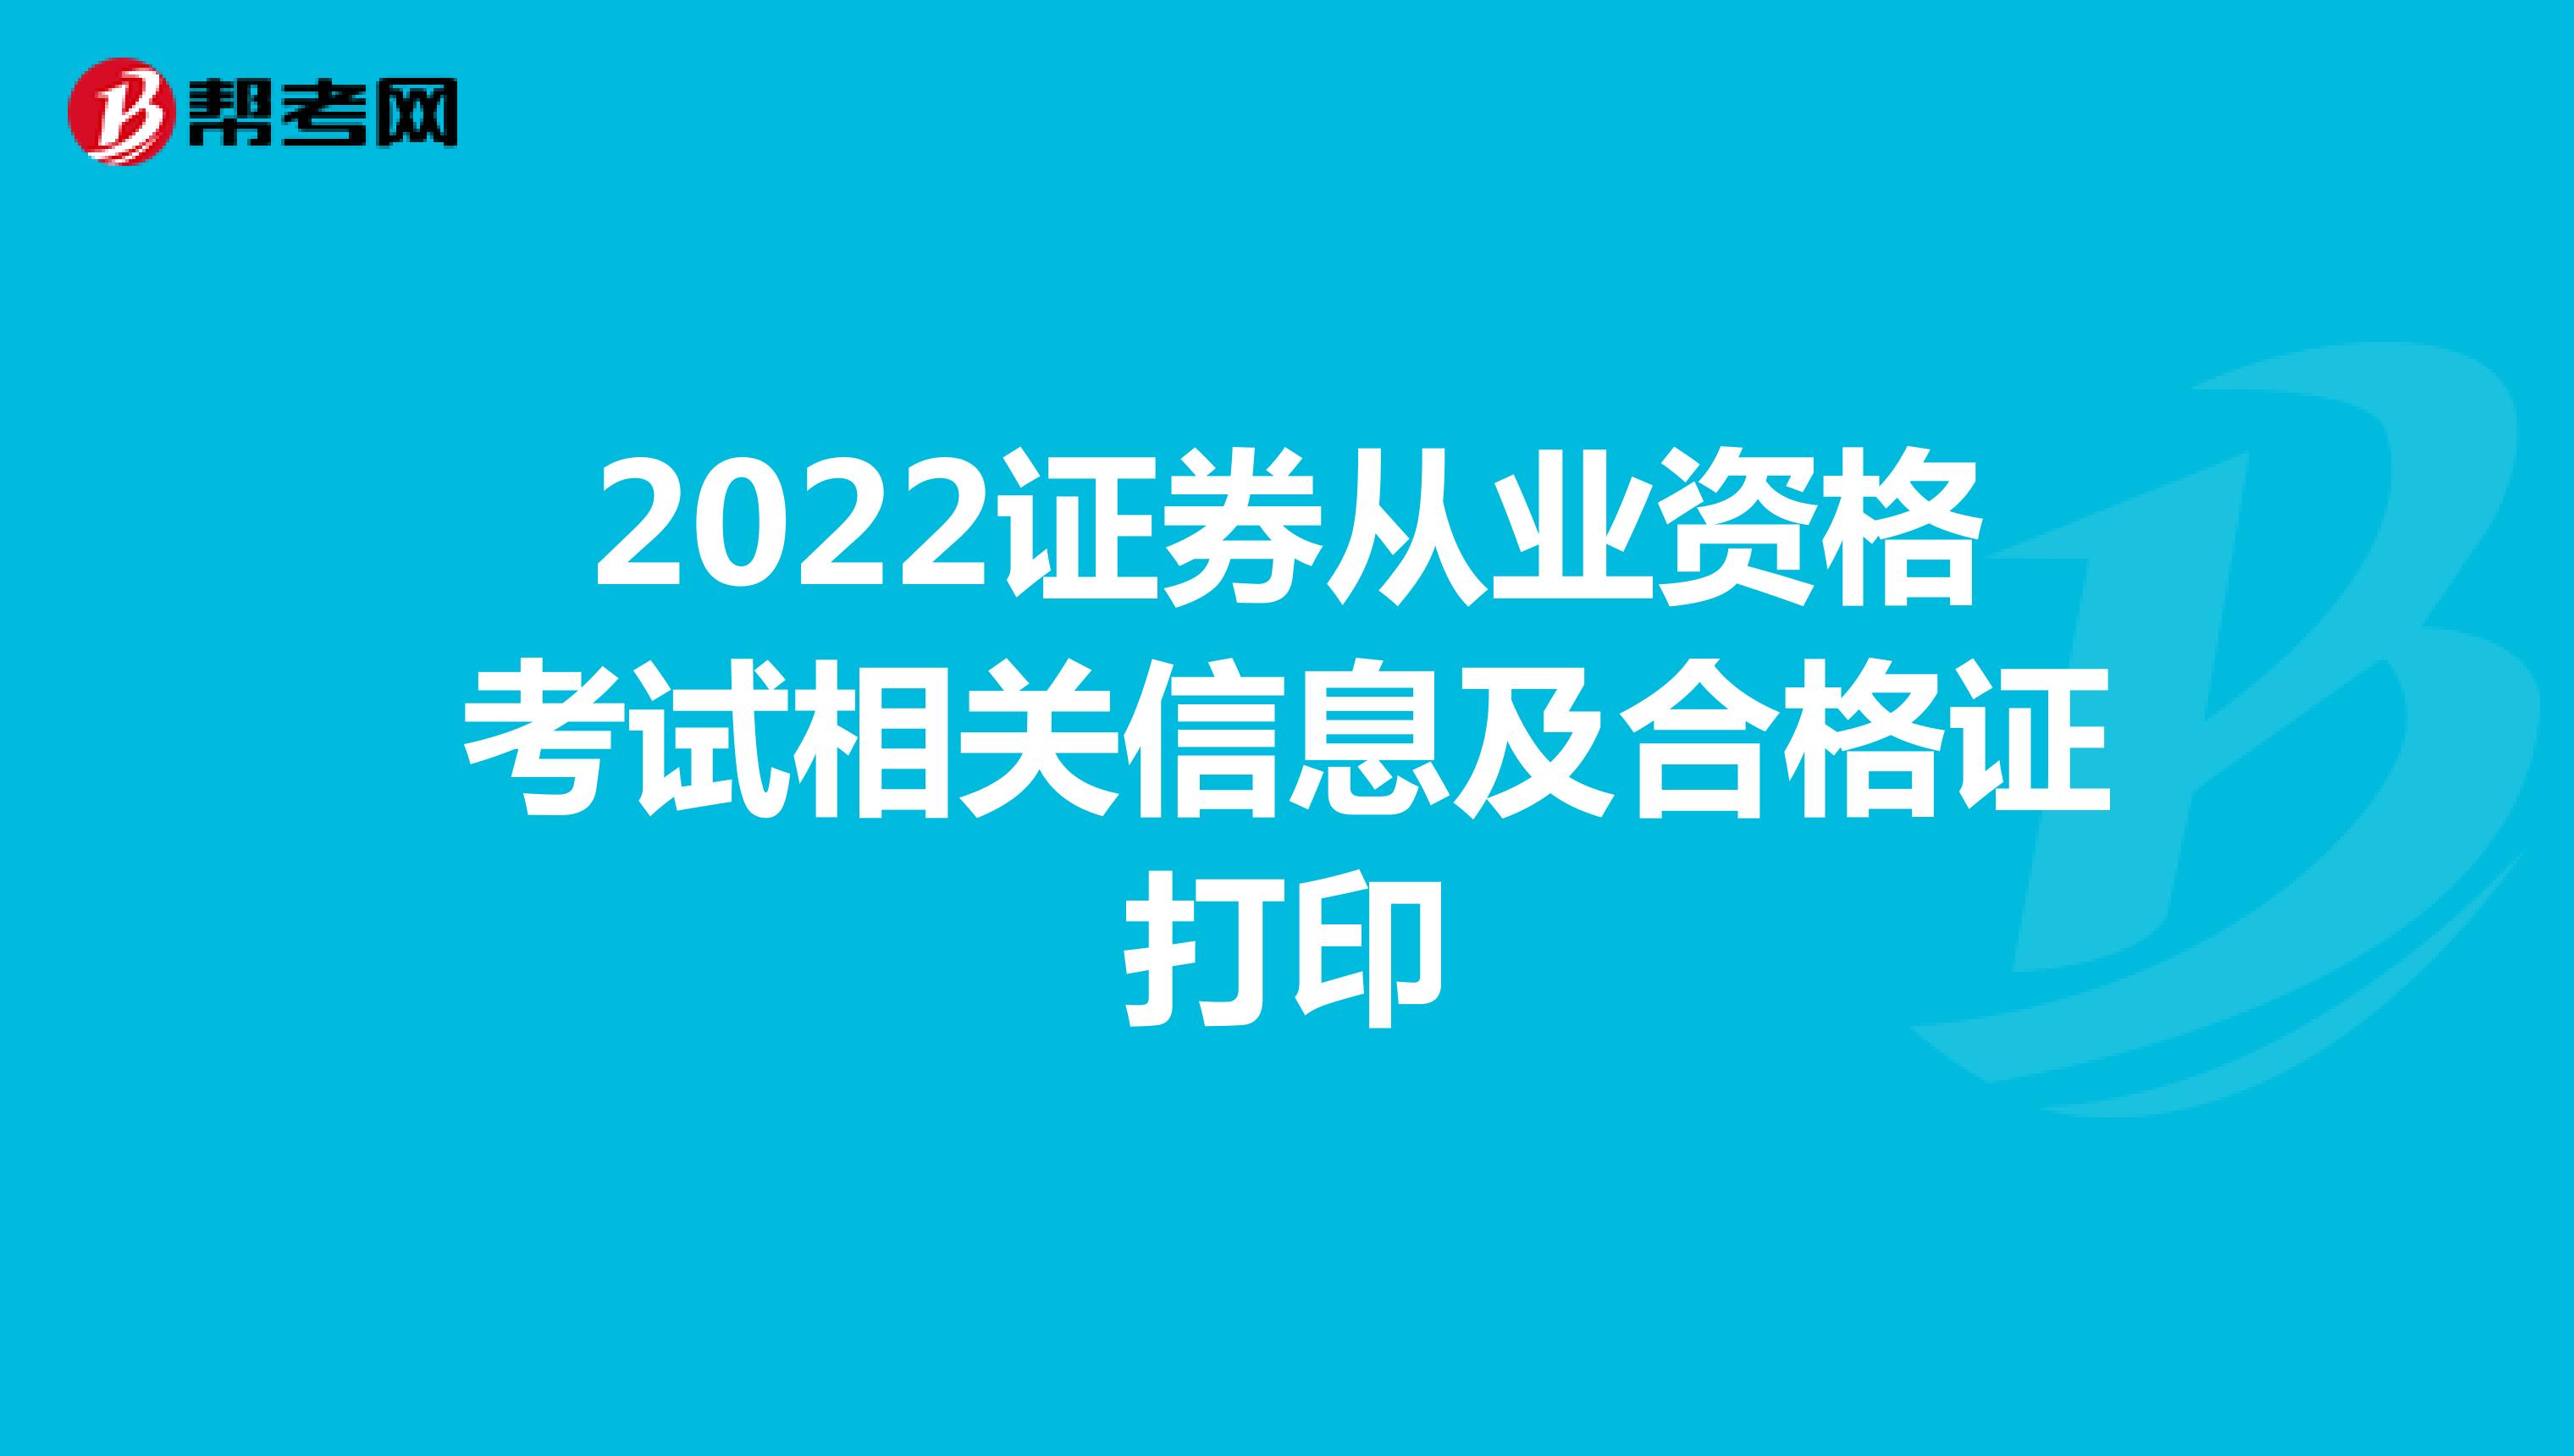 2022證券從業資格考試相關信息及合格證打印